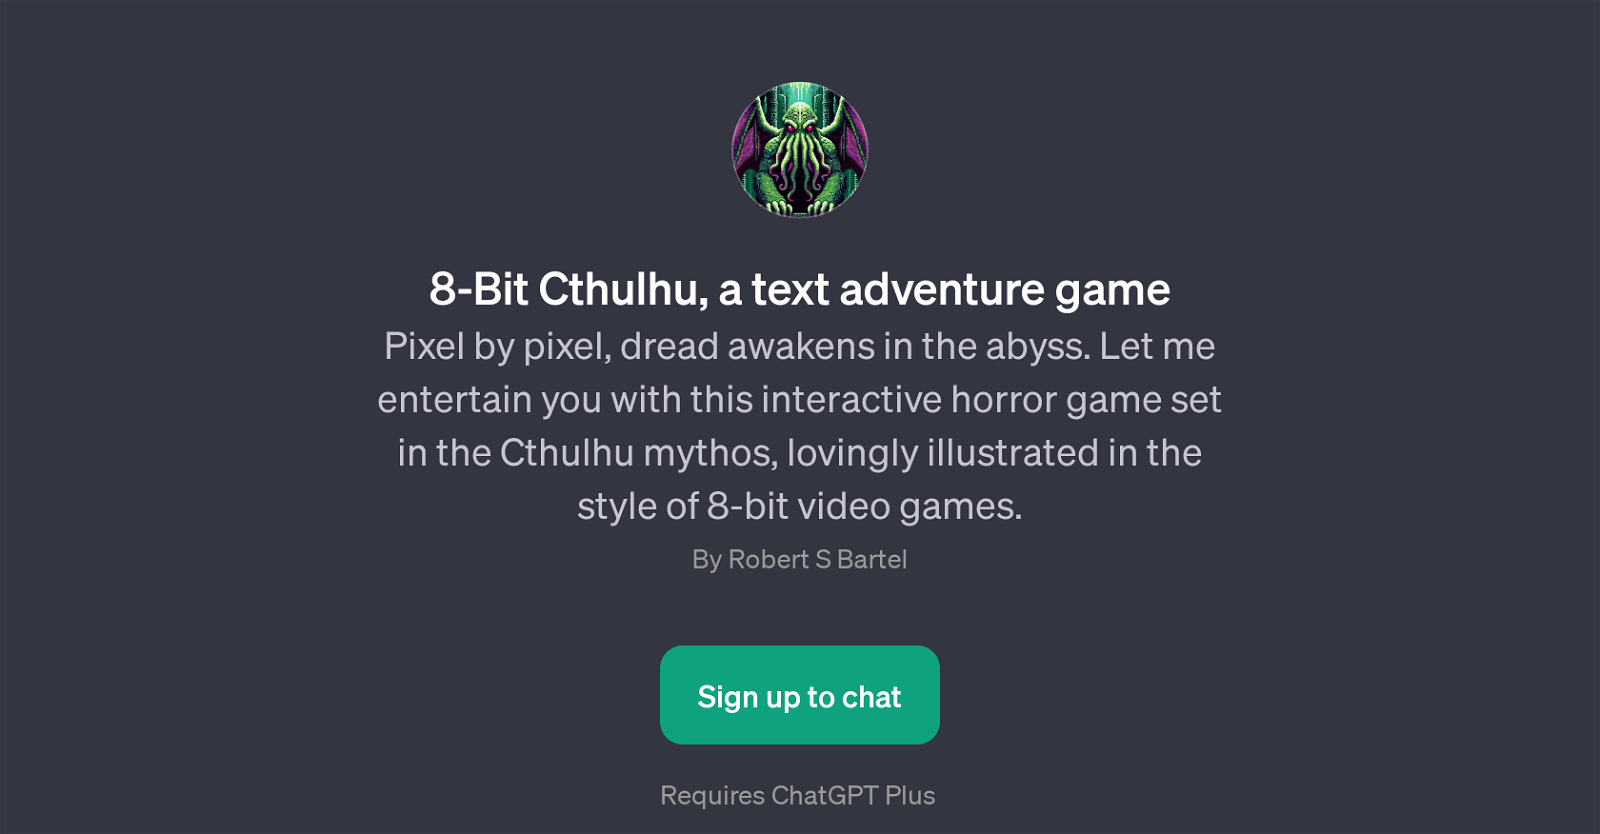 8-Bit Cthulhu website